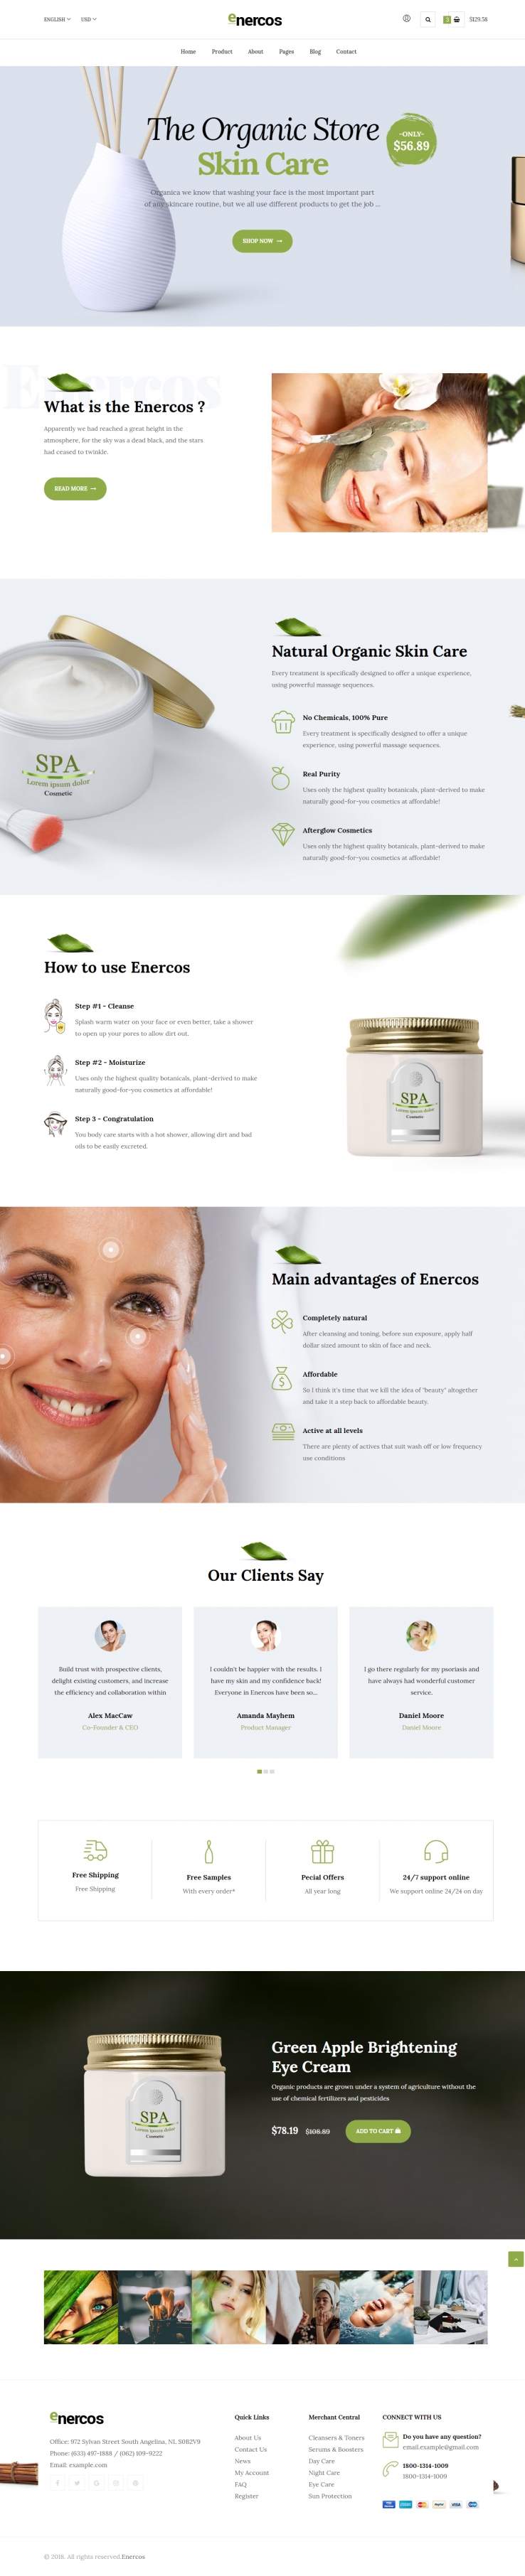 绿色简洁风格的美容化妆品整站网站源码下载